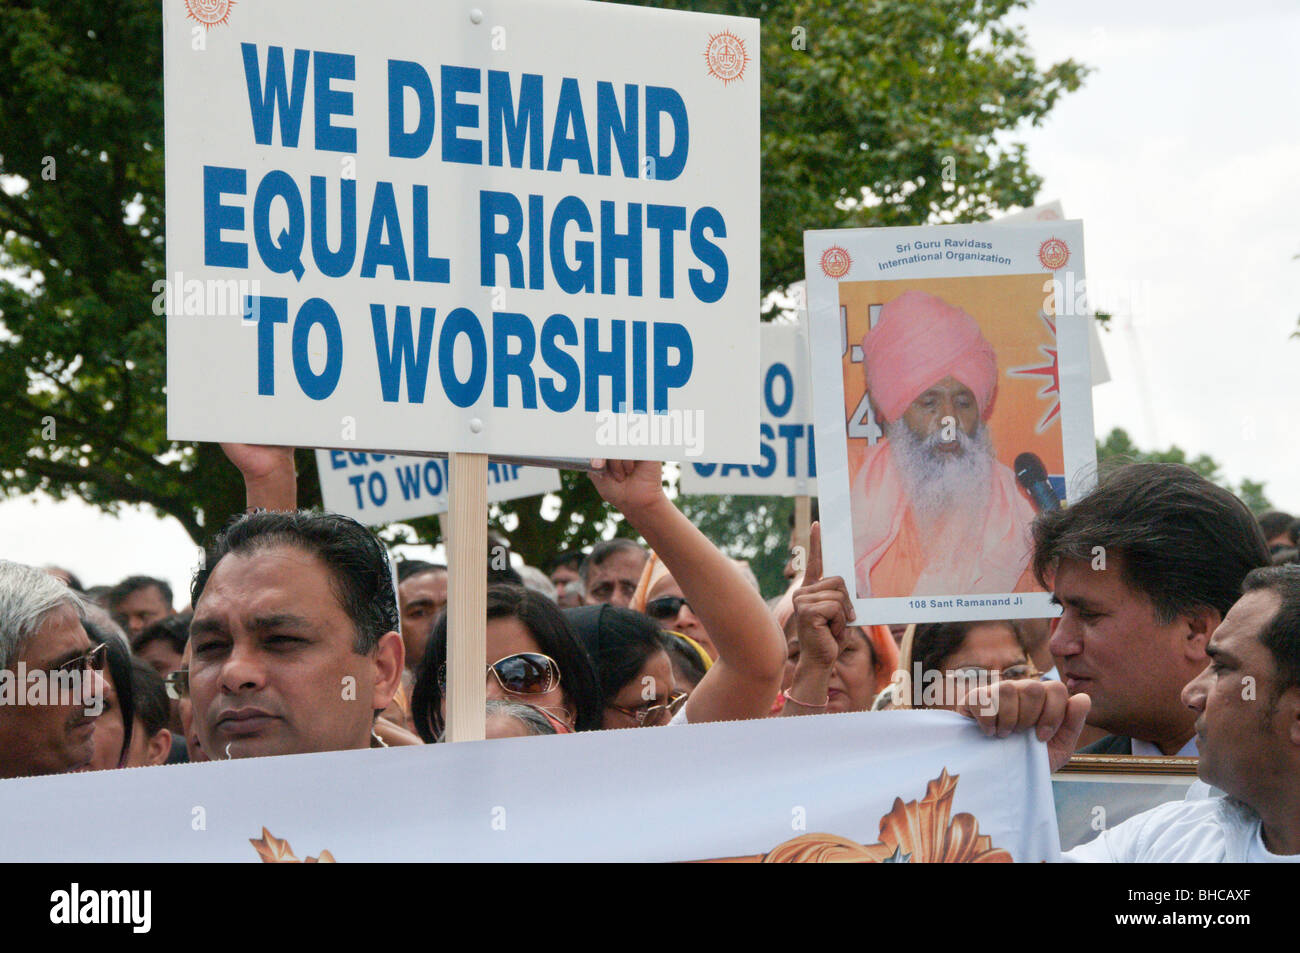 Ravidassia marzo contro la discriminazione di casta da sikh. La folla con cartelli chiedendo pari diritti al culto & Sant Ramanand Foto Stock